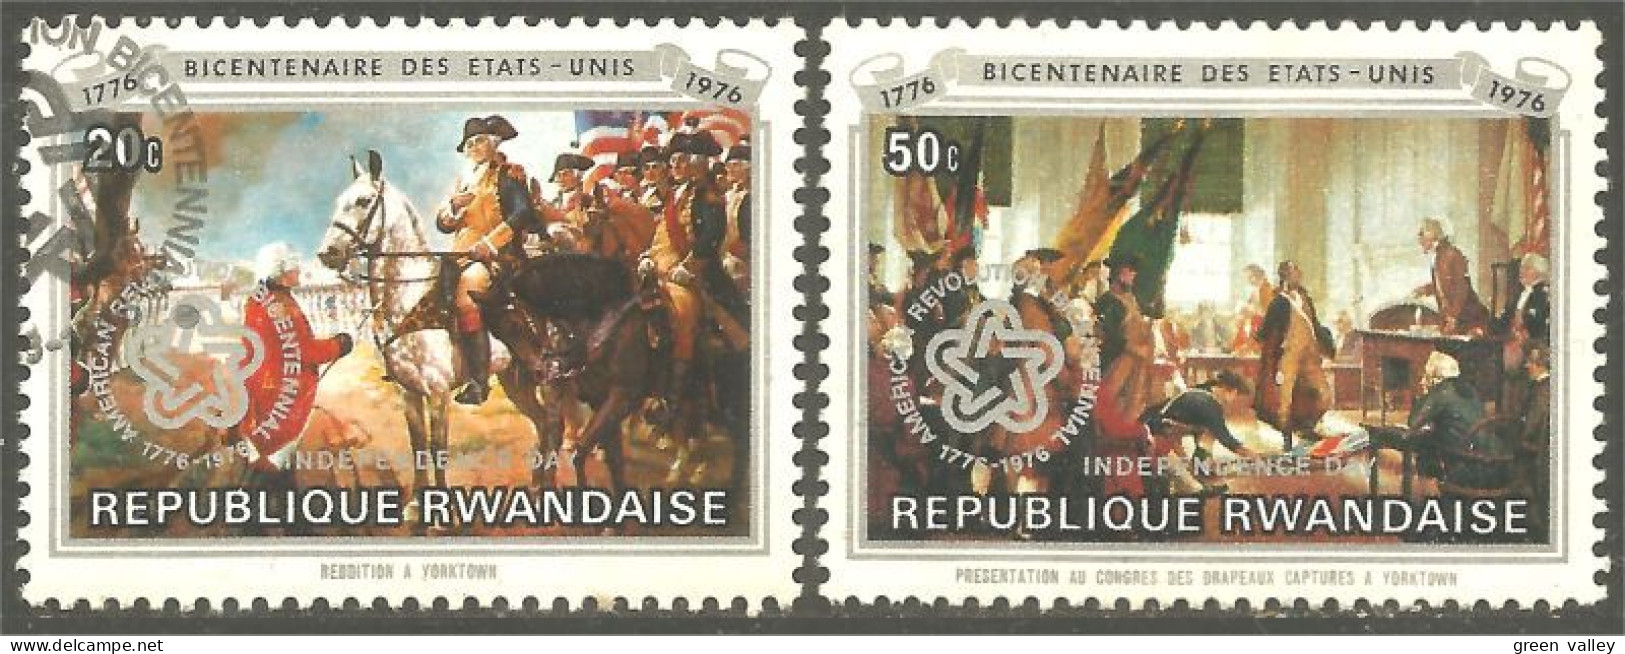 777 Rwanda Bicentenaire USA Bicentenary 1776 MNH ** Neuf SC (RWA-269) - Onafhankelijkheid USA